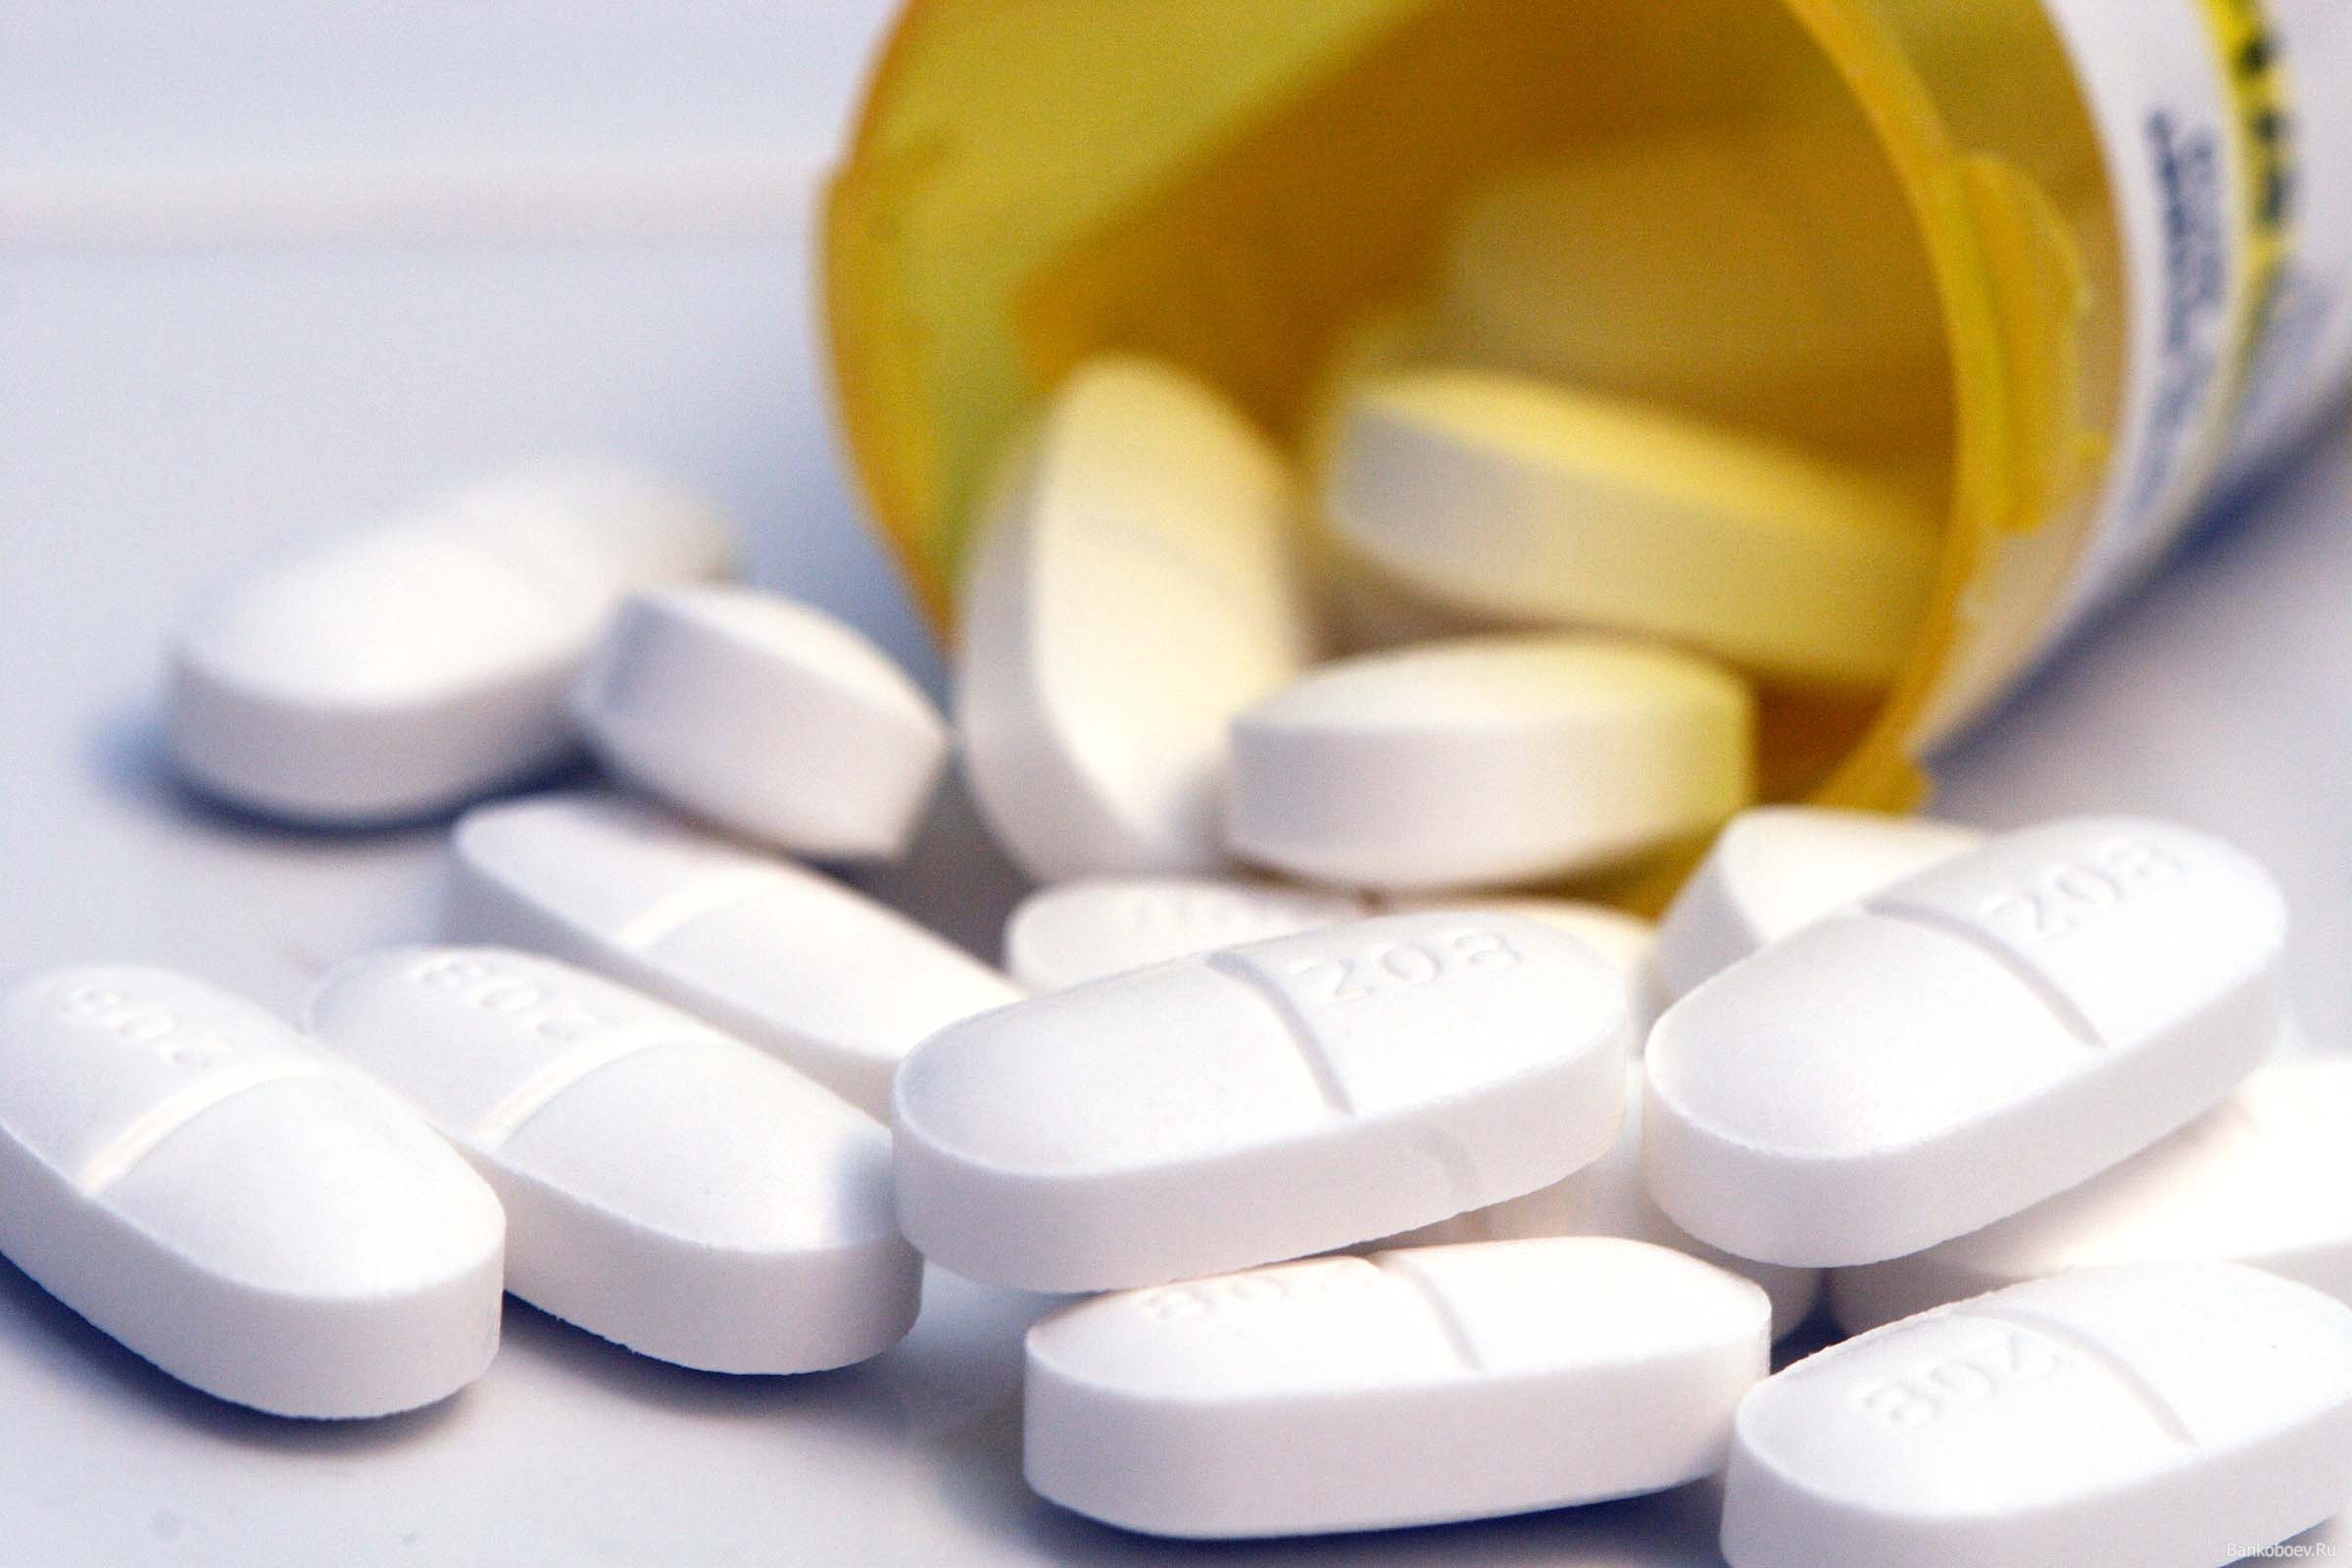 Росздравнадзор заблокировал 234 сайта, которые незаконно торговали лекарствами